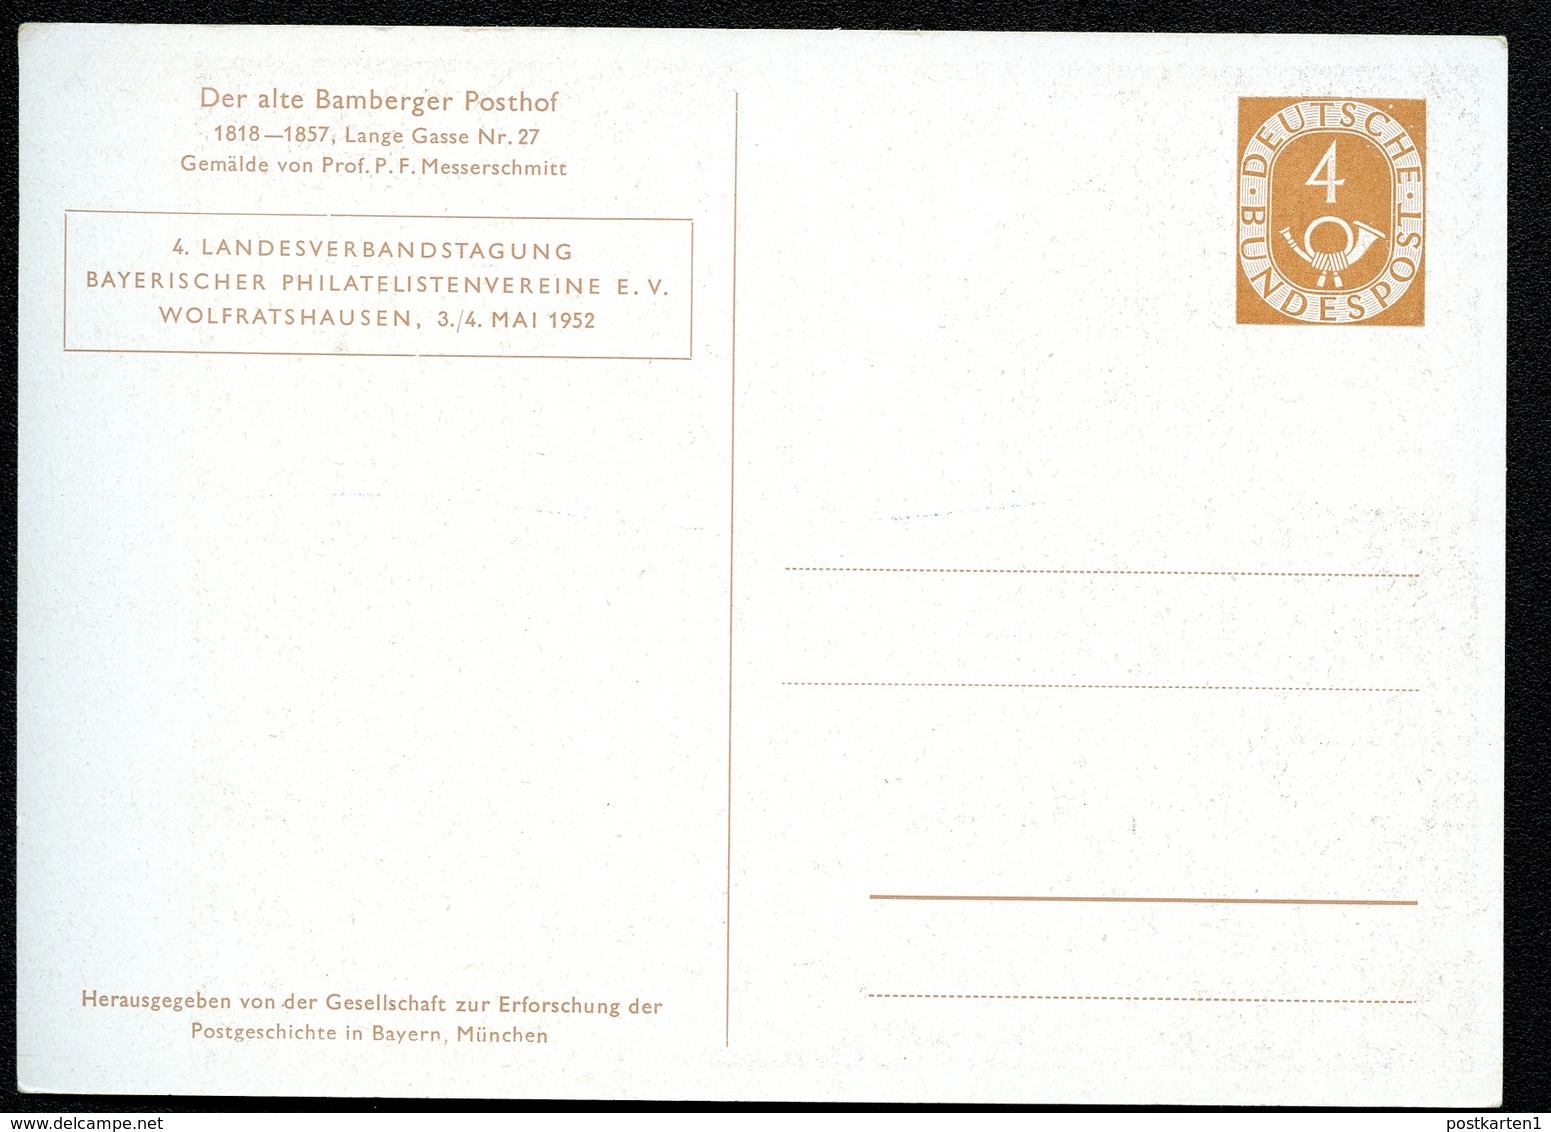 Bund PP2 D2/007  LANDESVERBANDSTAGUNG BAMBERGER POSTHOF 1952  NGK 30,00€ - Private Postcards - Mint